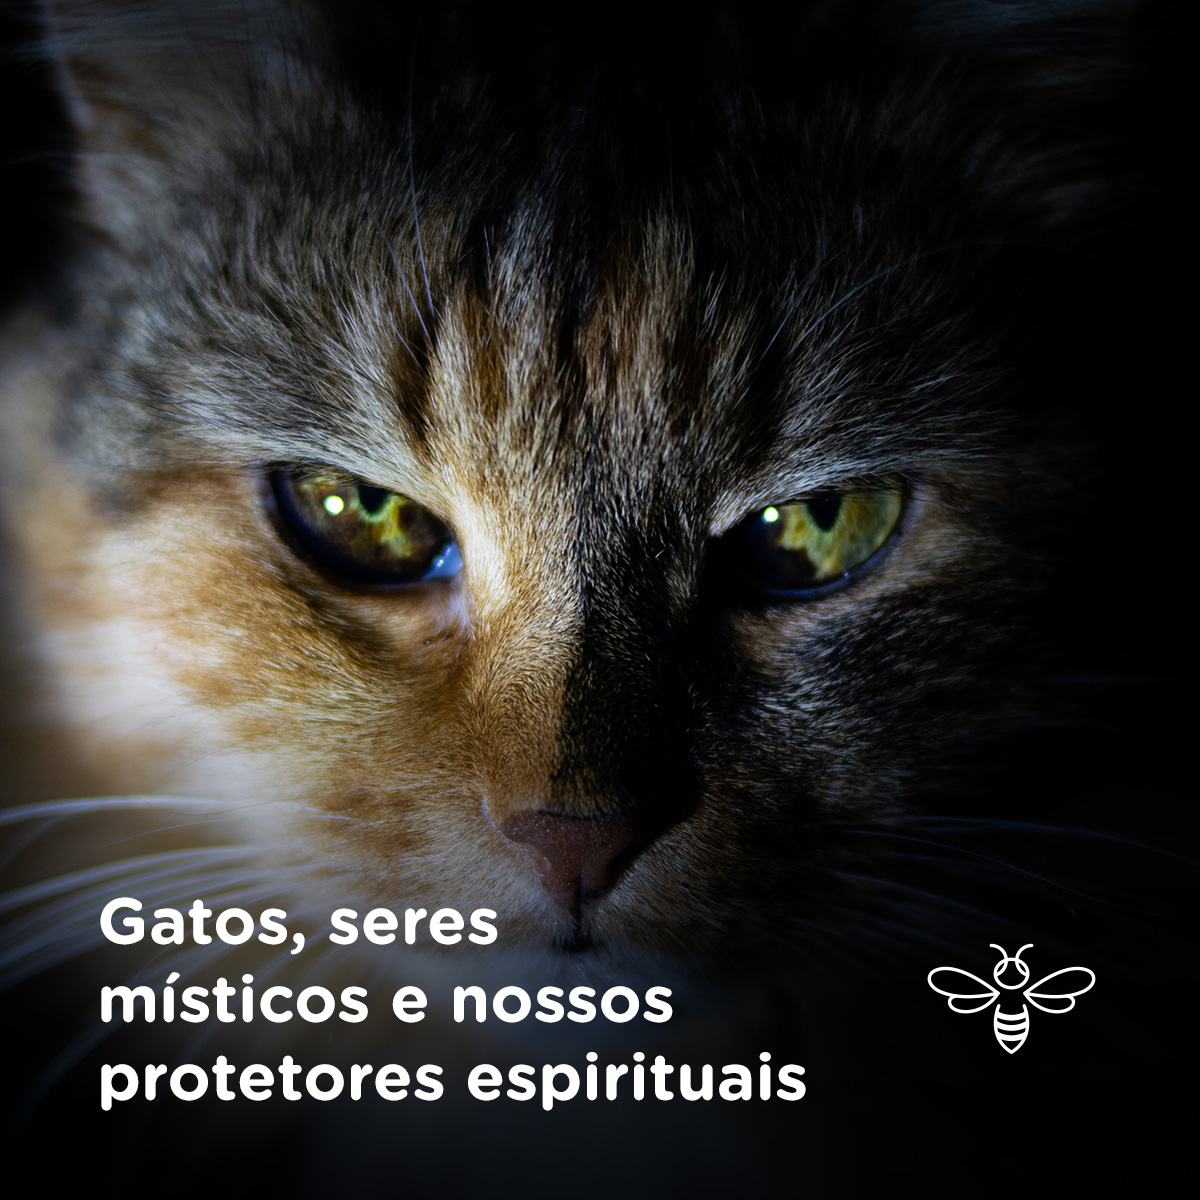 Gatos, seres místicos e nossos protetores espirituais